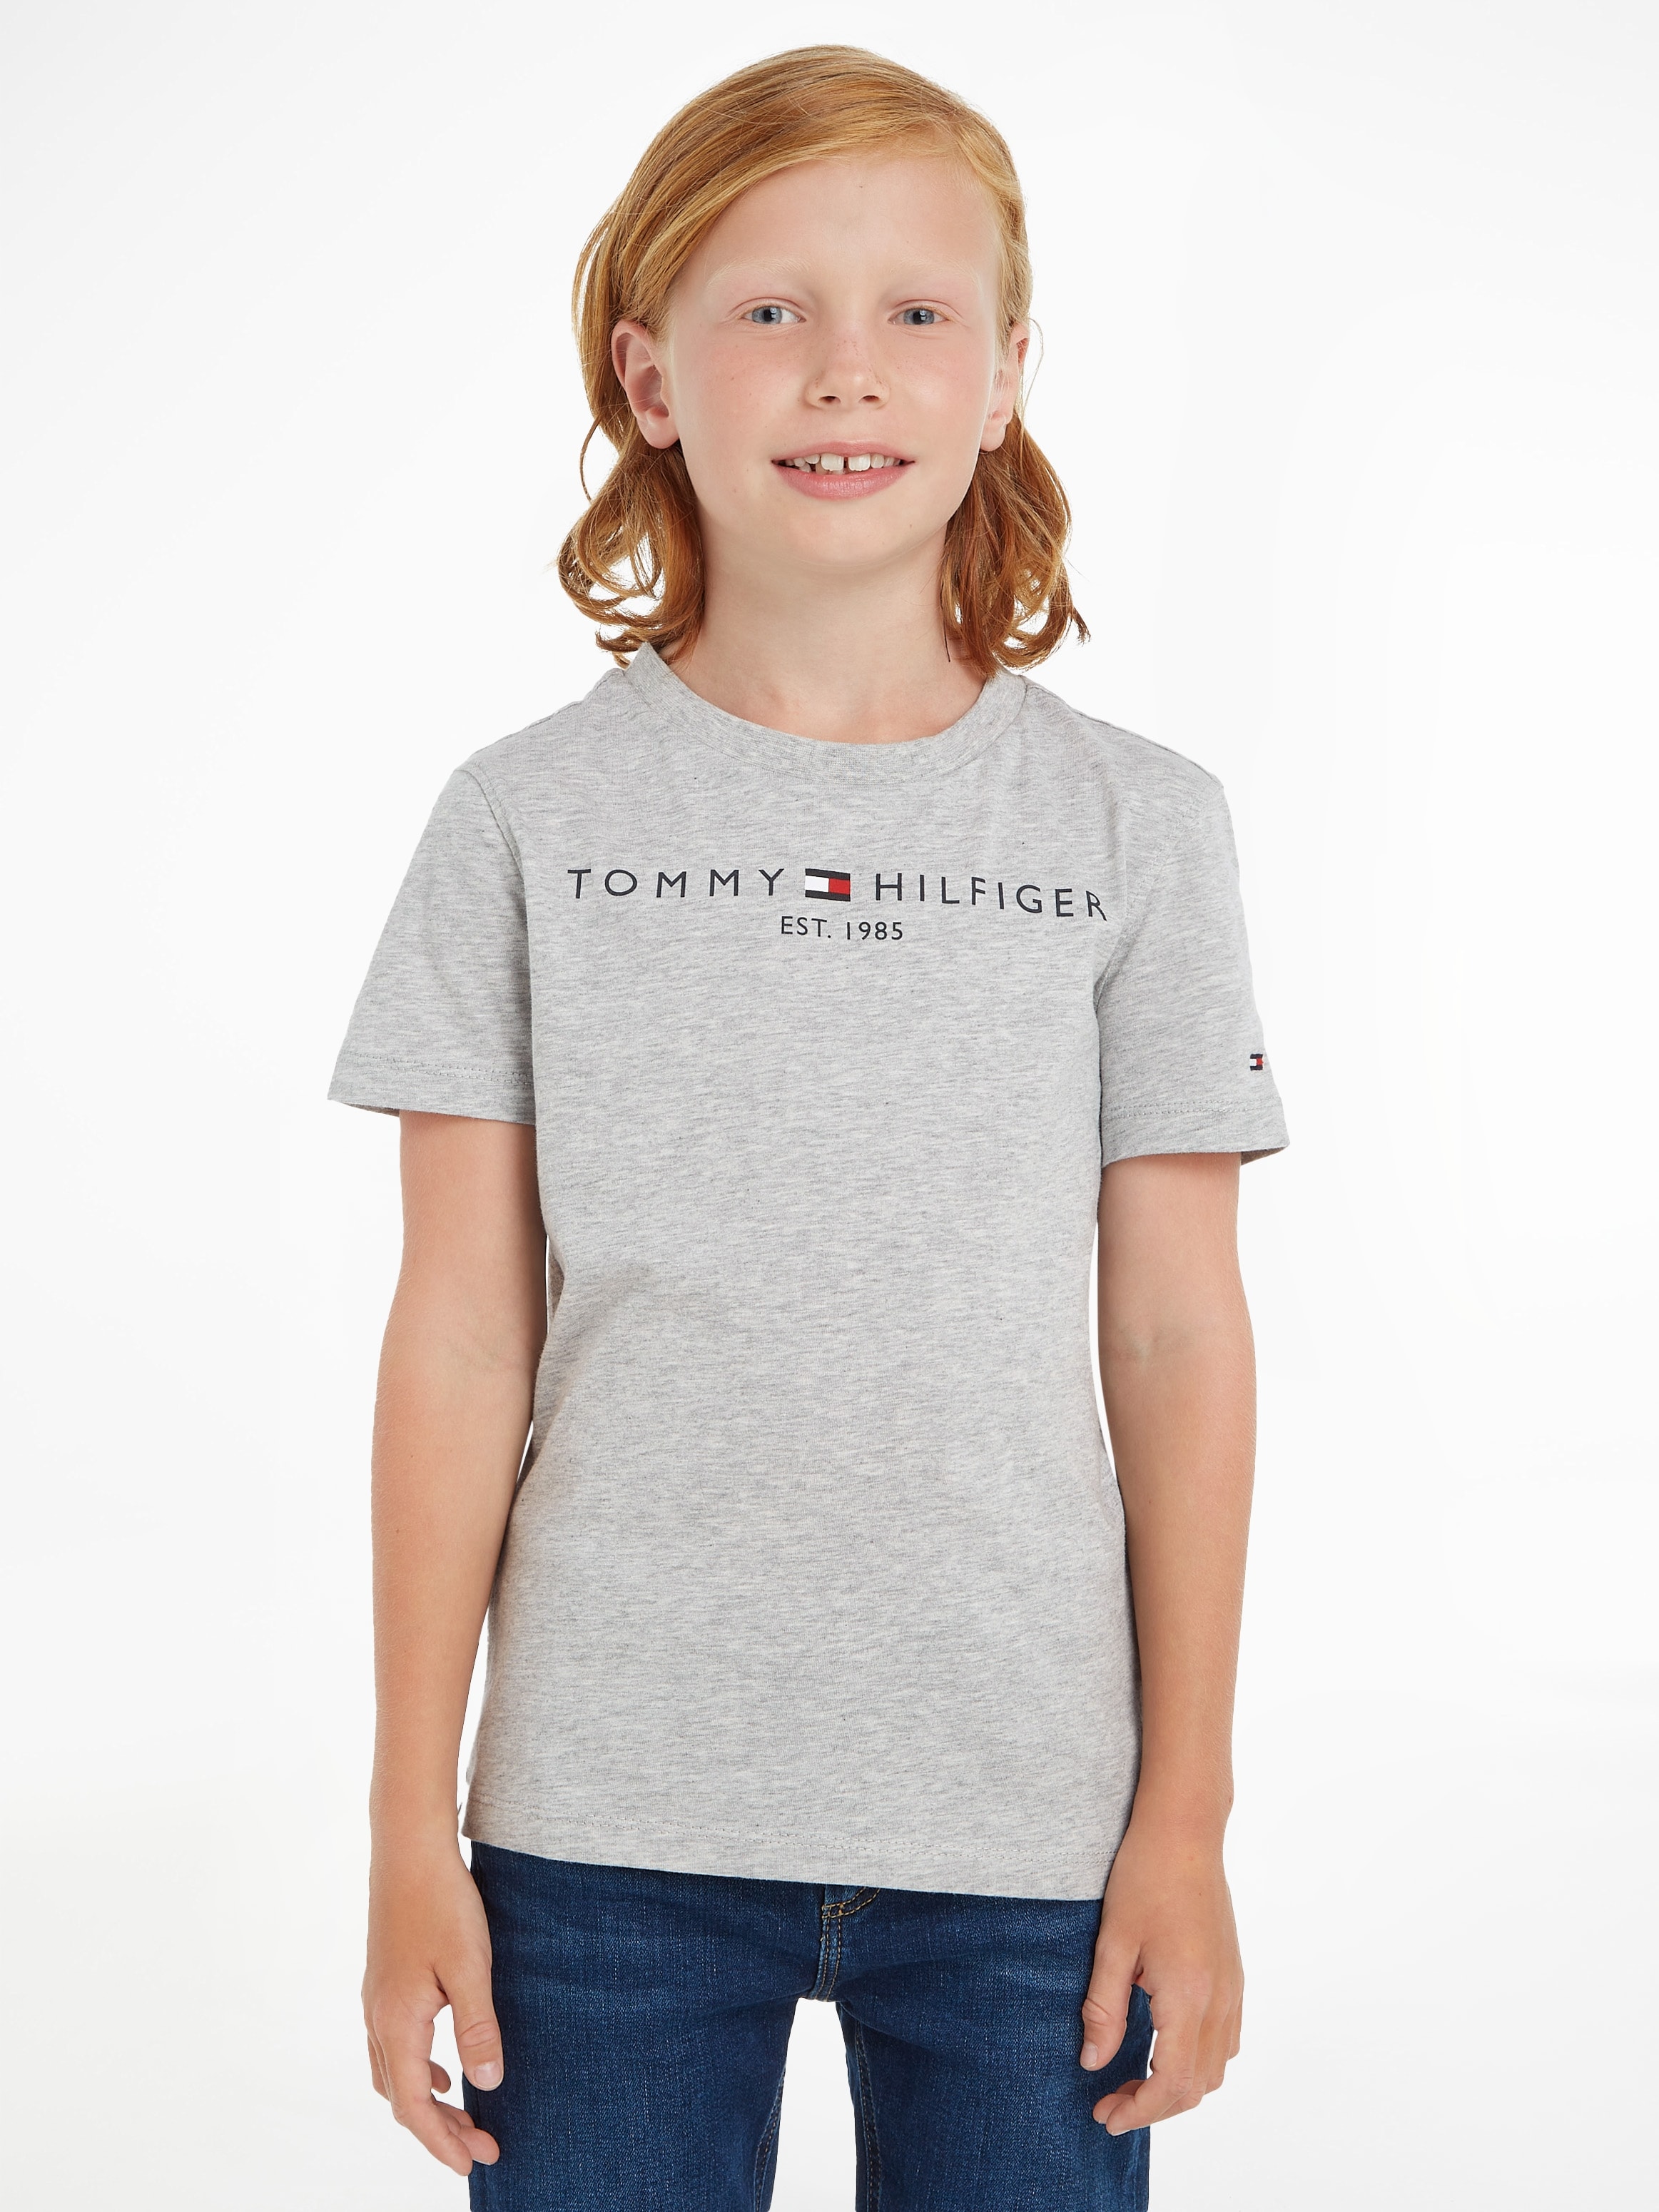 »ESSENTIAL Mädchen TEE«, bei Kids OTTO T-Shirt Hilfiger Tommy und Junior Kinder bestellen MiniMe,für Jungen